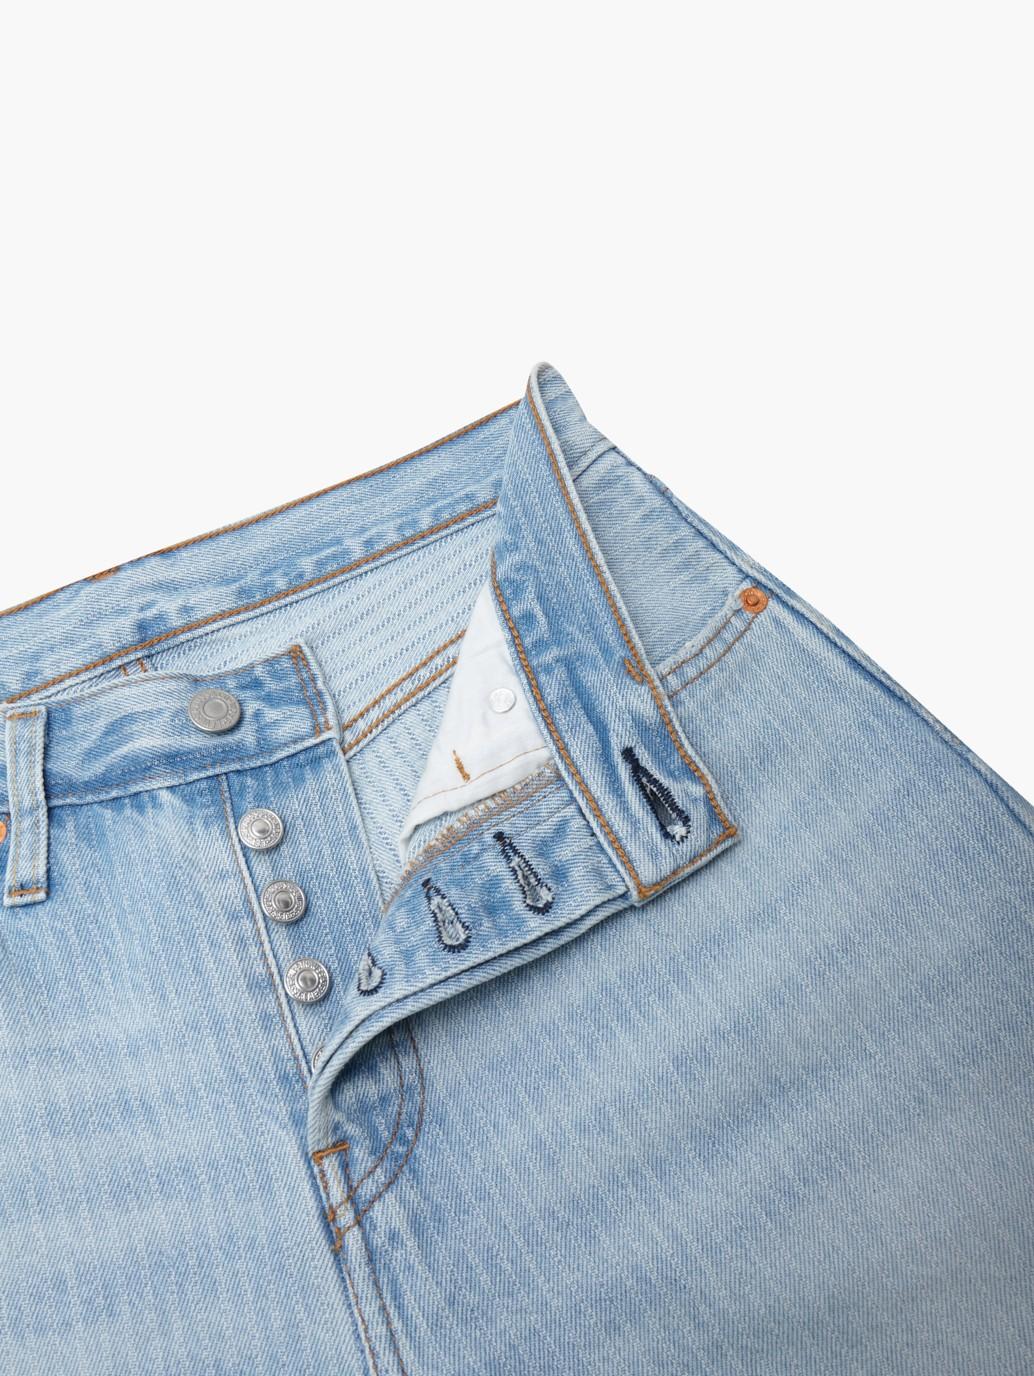 Buy [As worn by NewJeans Minji] Levi's® Women's 501® 81 Jeans | Levi’s ...